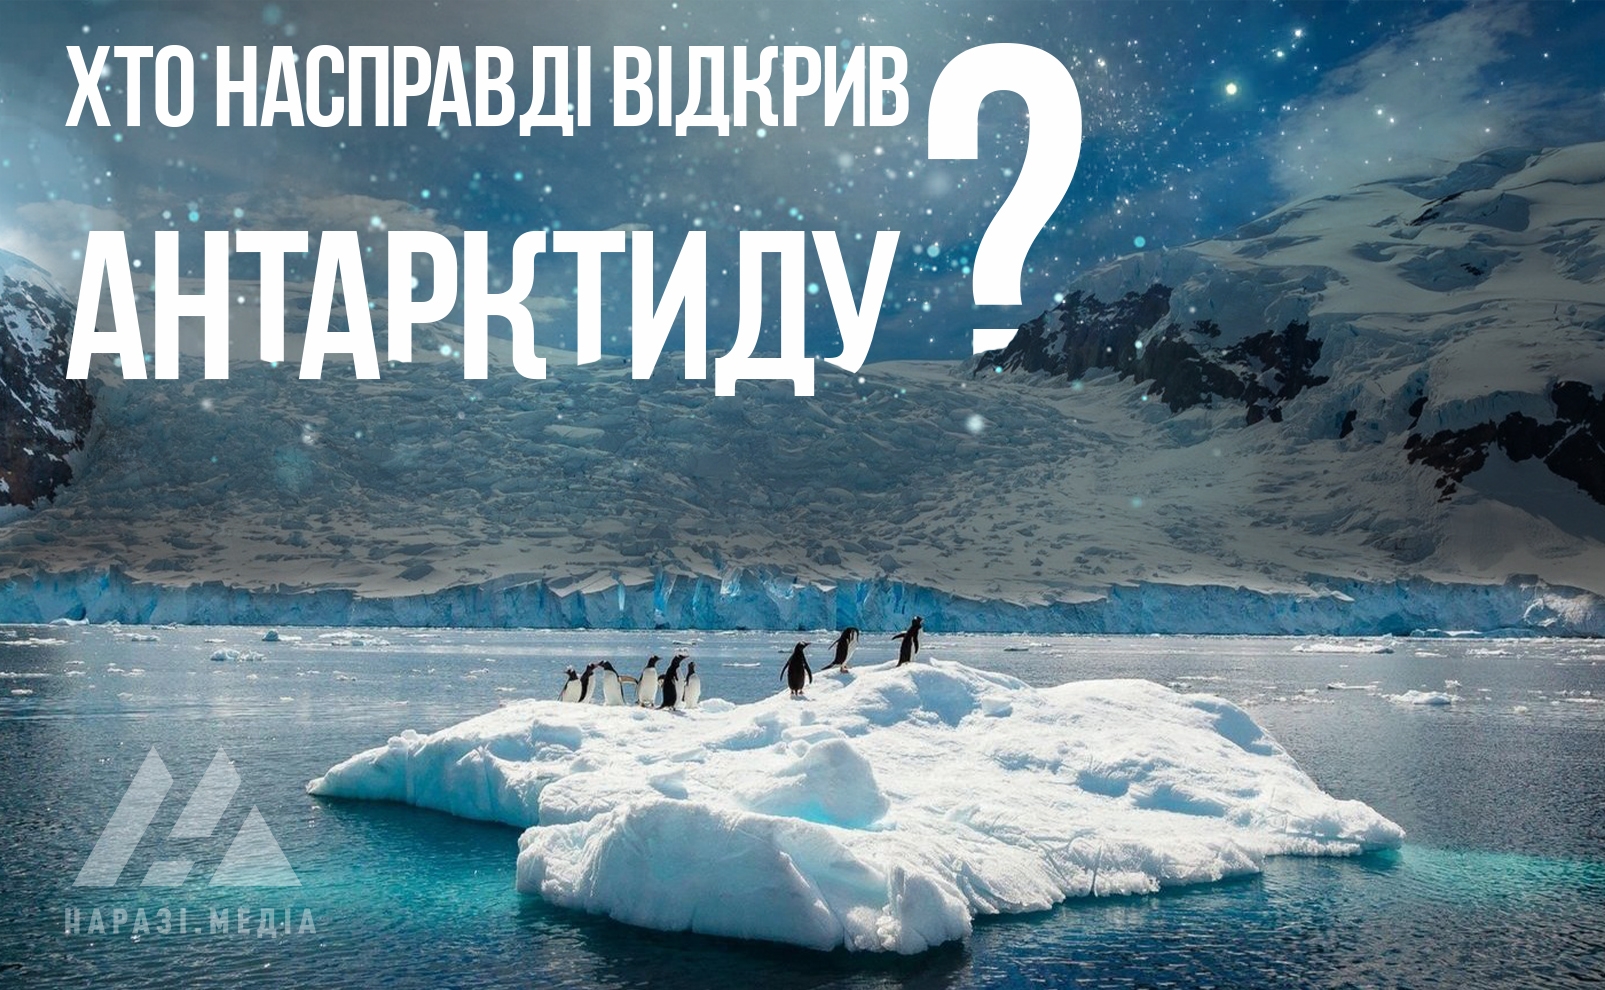 Відкриття Антарктиди Беллінсгаузеном та Лазарєвим — радянський міф чи історична правда?